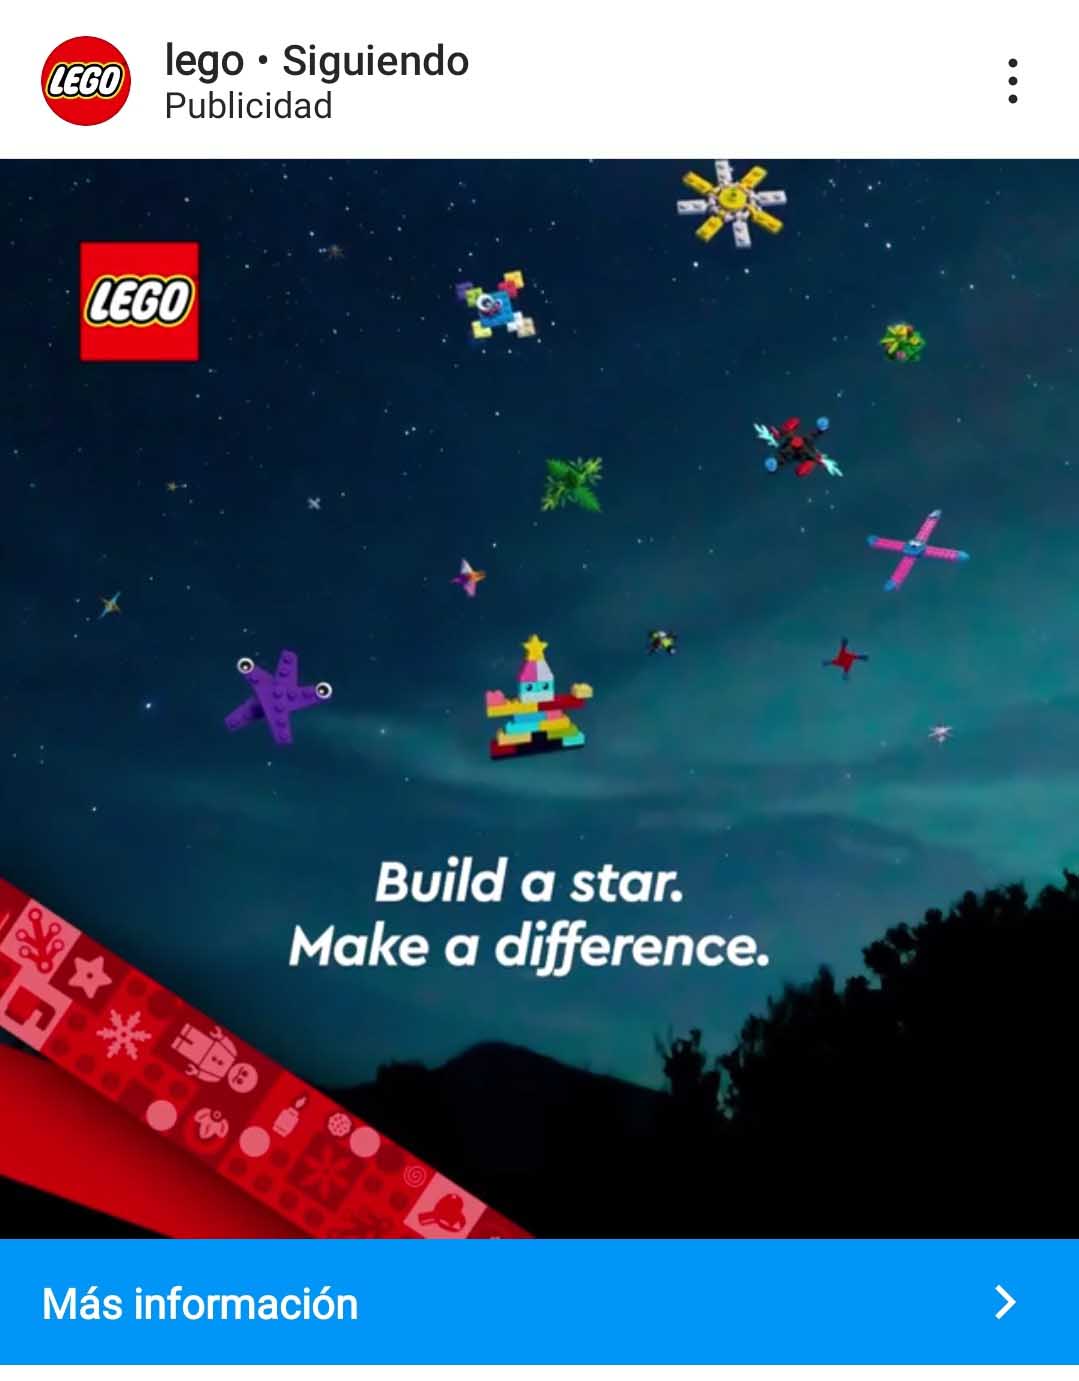 Ejemplo de publicidad en redes sociales de Lego en Instagram